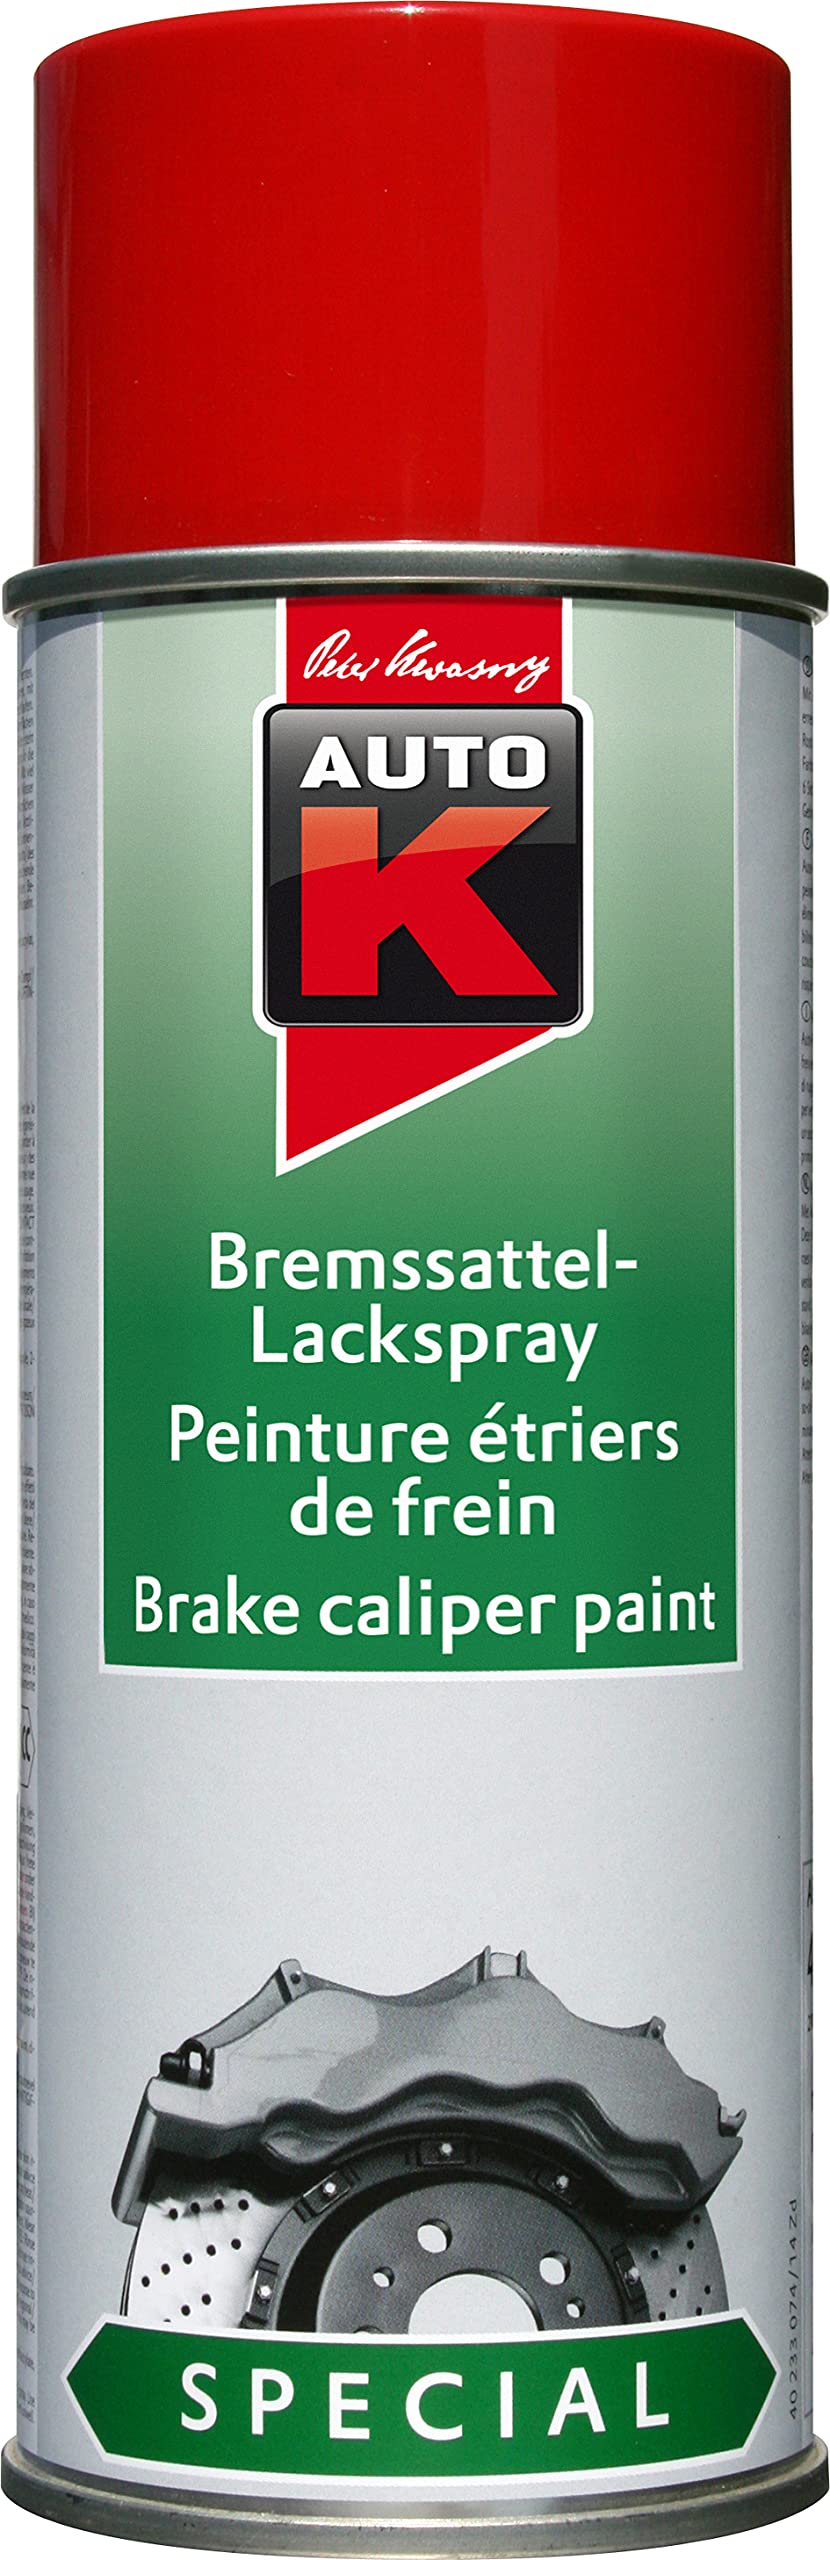 AutoK Special - Bremssattel Lackspray, 400ml, rot - Für farbliche Effekte im sichtbaren Bremsenbereich von AutoK